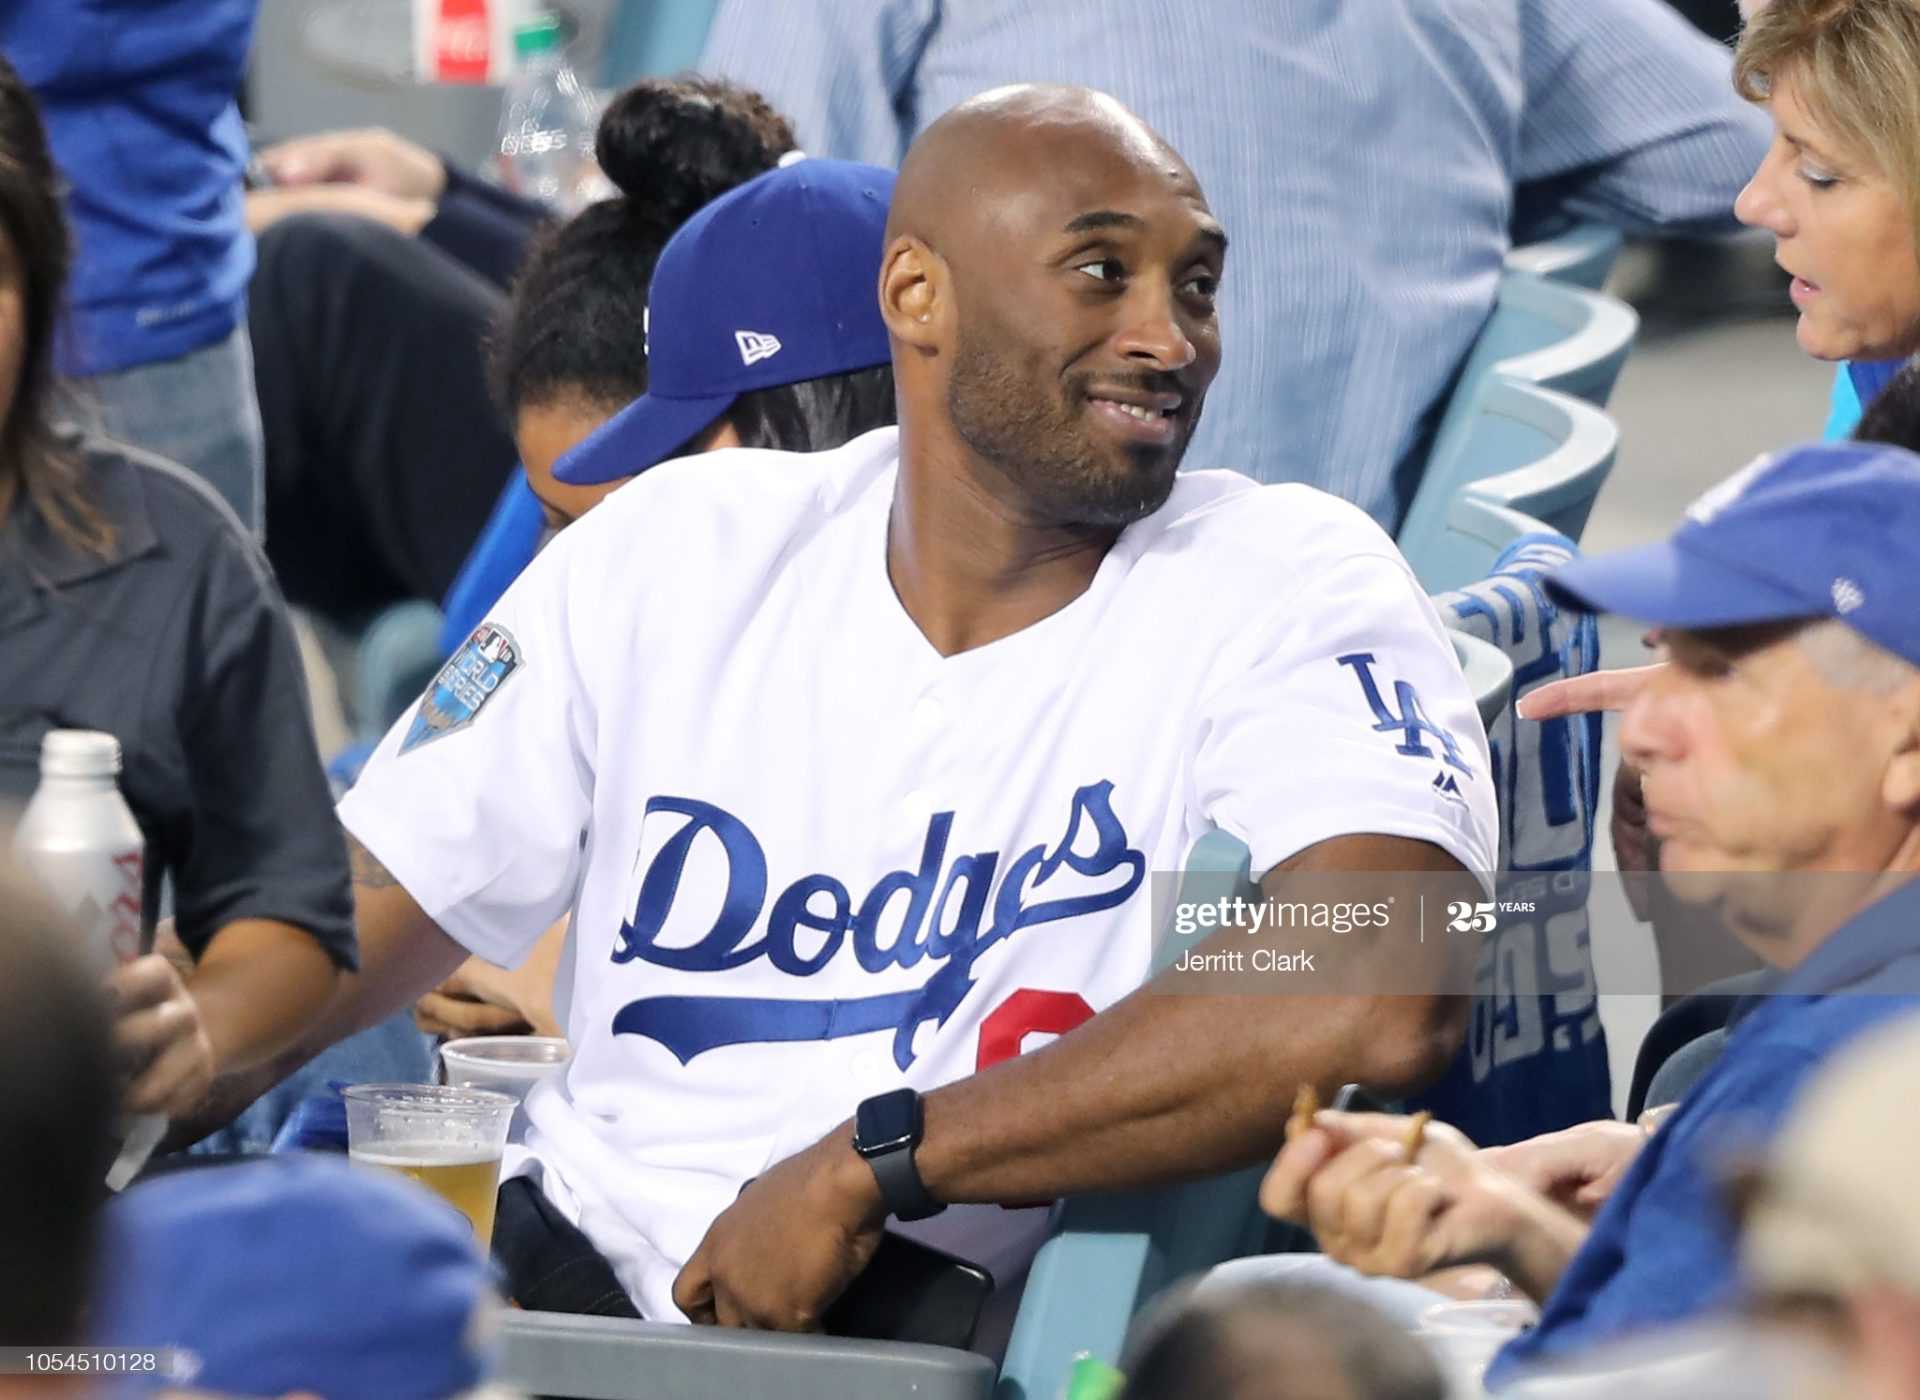 REGARDER: Kobe Bryant des Lakers Pitching pour les LA Dodgers dans cette vidéo de retour